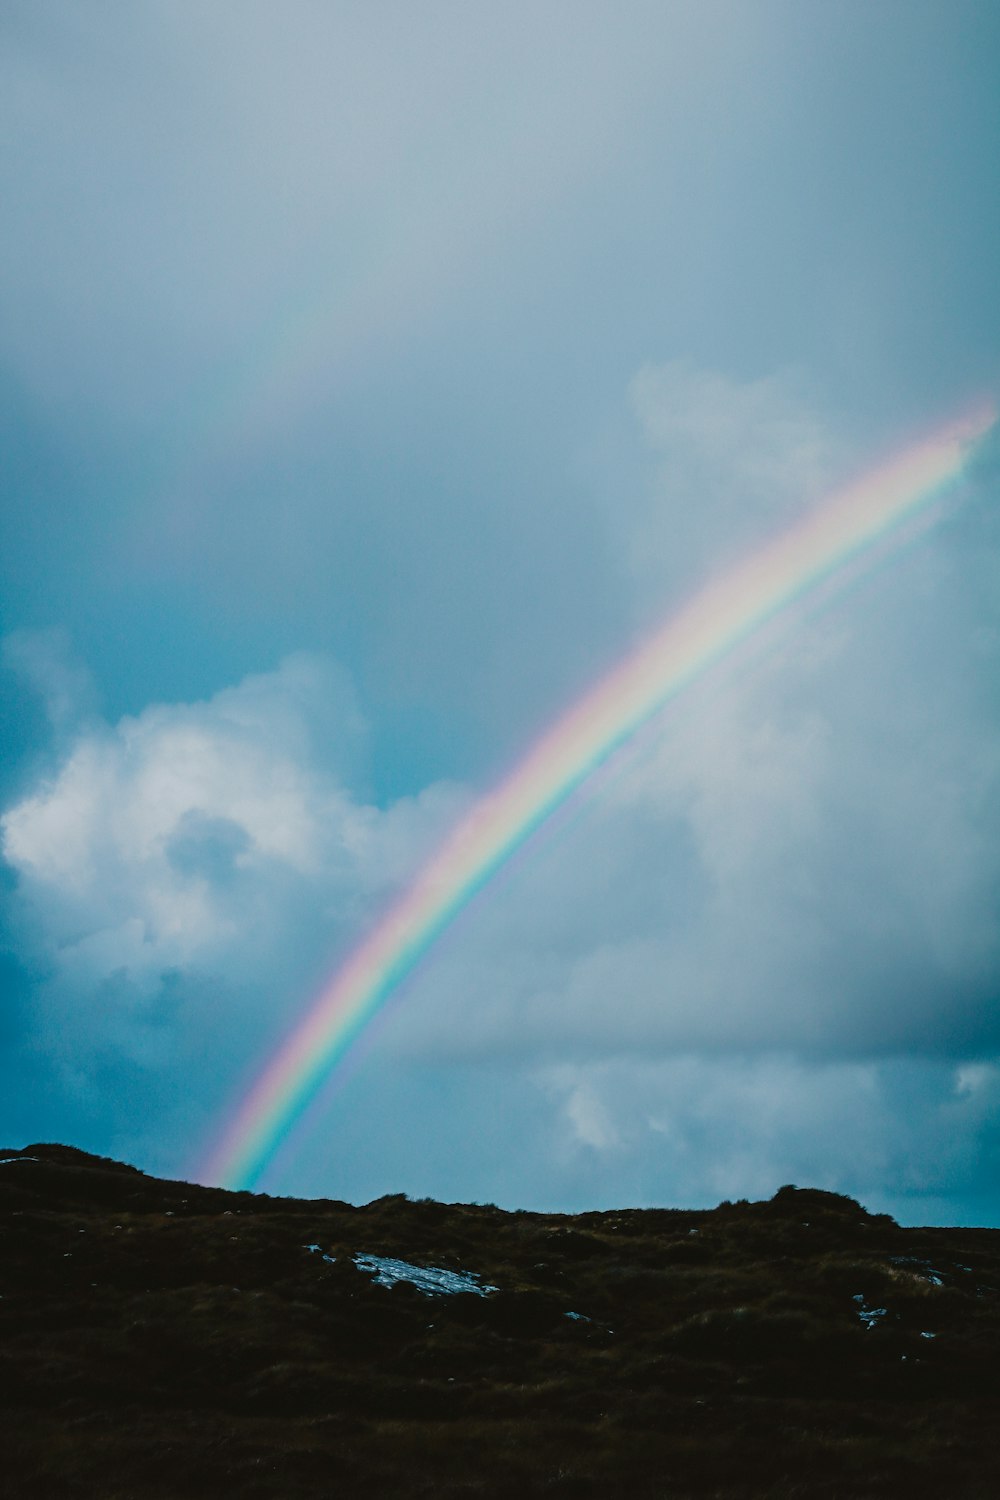 Ein Regenbogen erscheint am Himmel über einem Hügel